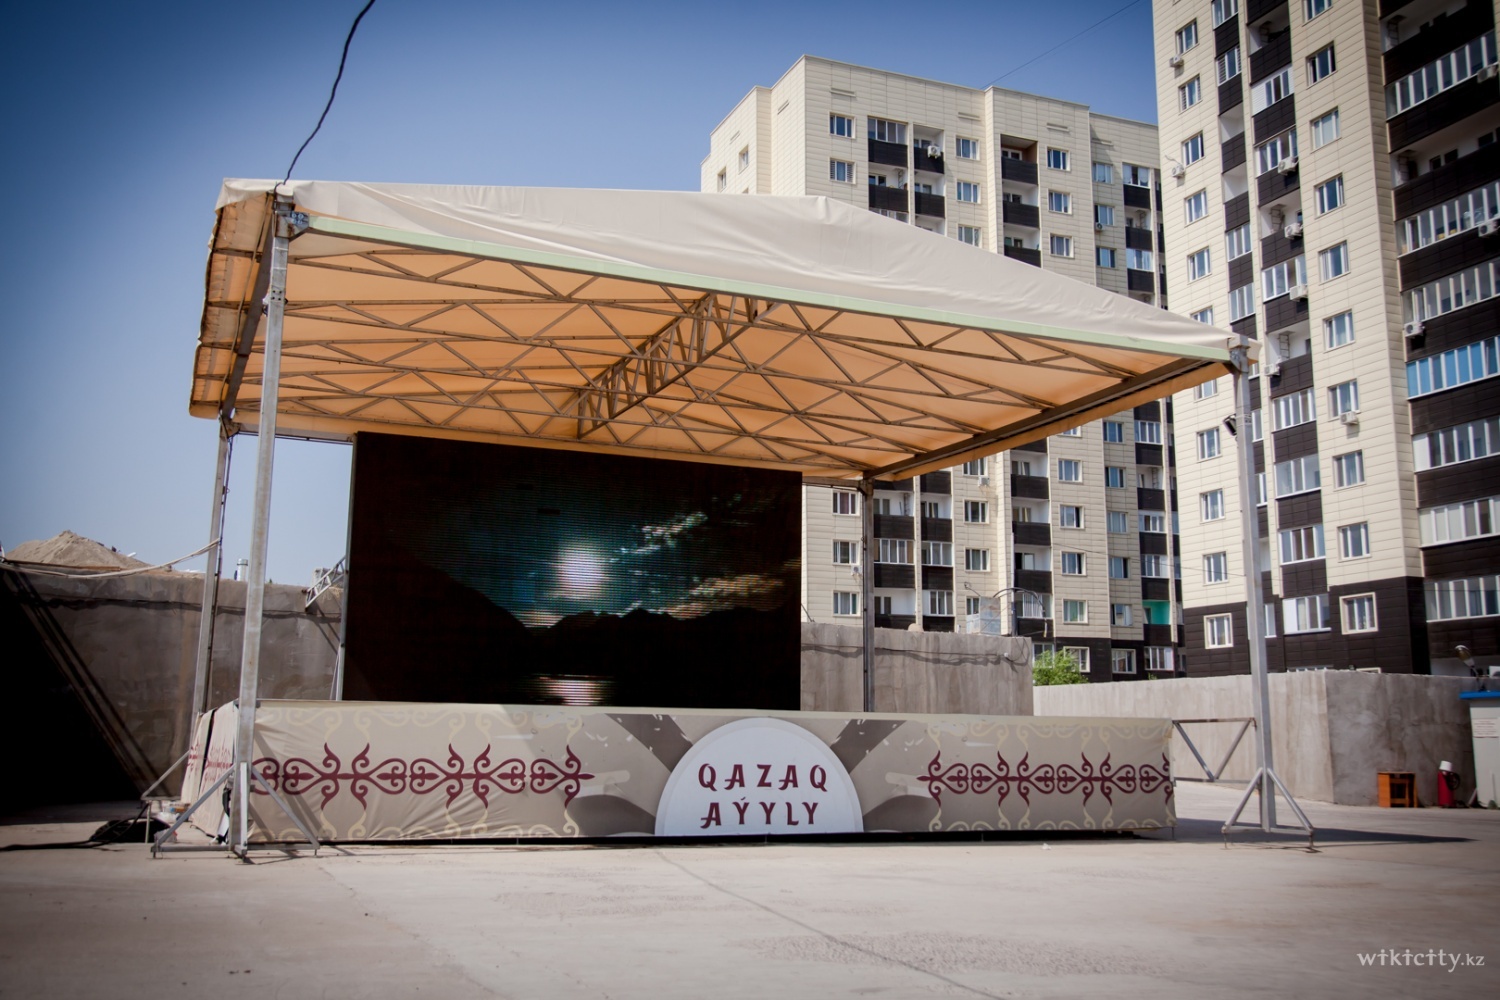 Фото Grand Star - Алматы. Сценическая площадка Qazaq eli - высокая проходимость, крытая площадка, открытое пространство, бесплатная парковка. Аренда - 200 000 тенге.